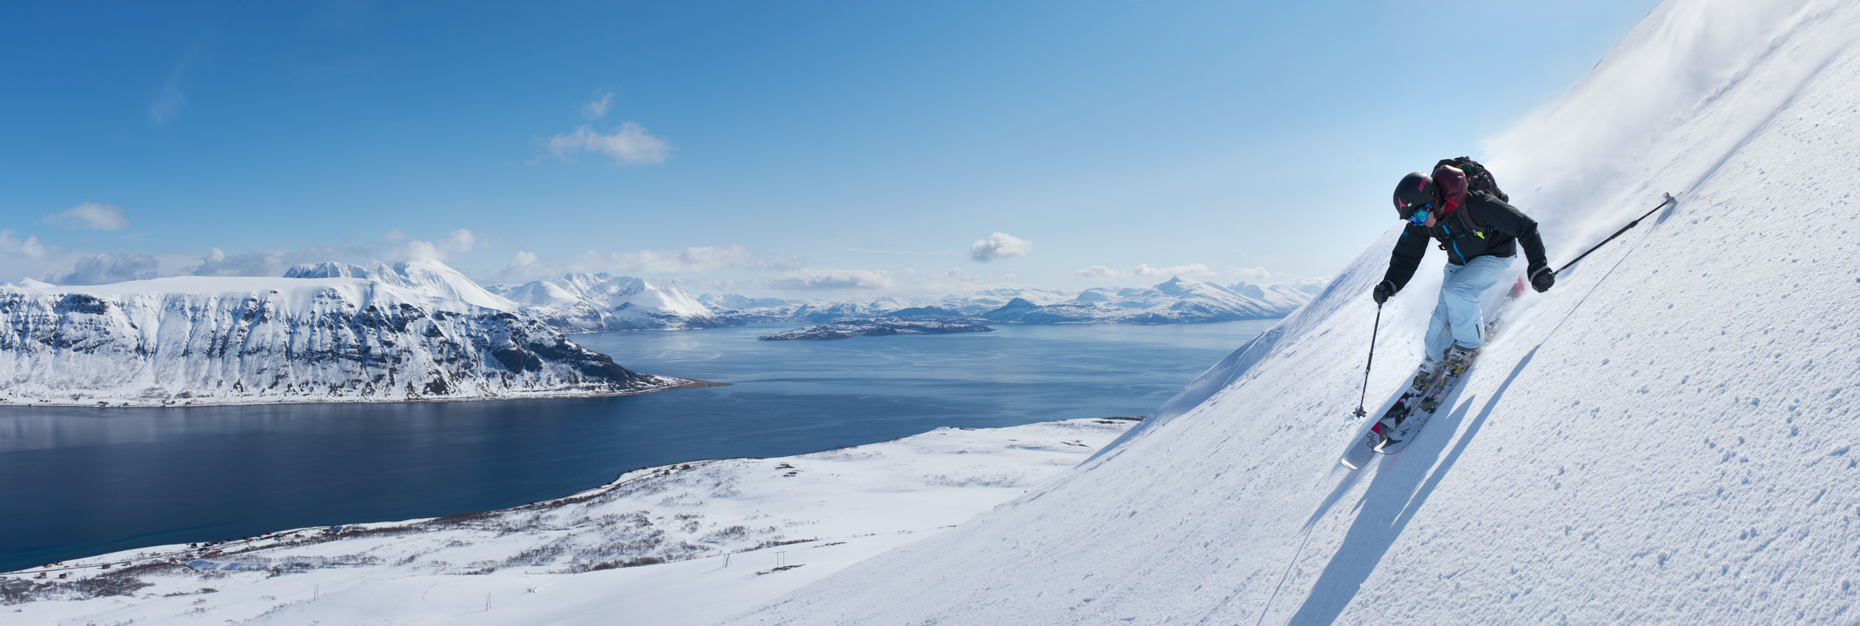 Jon Wyatt Photography - skier in Lyngen Peninsula, Norway